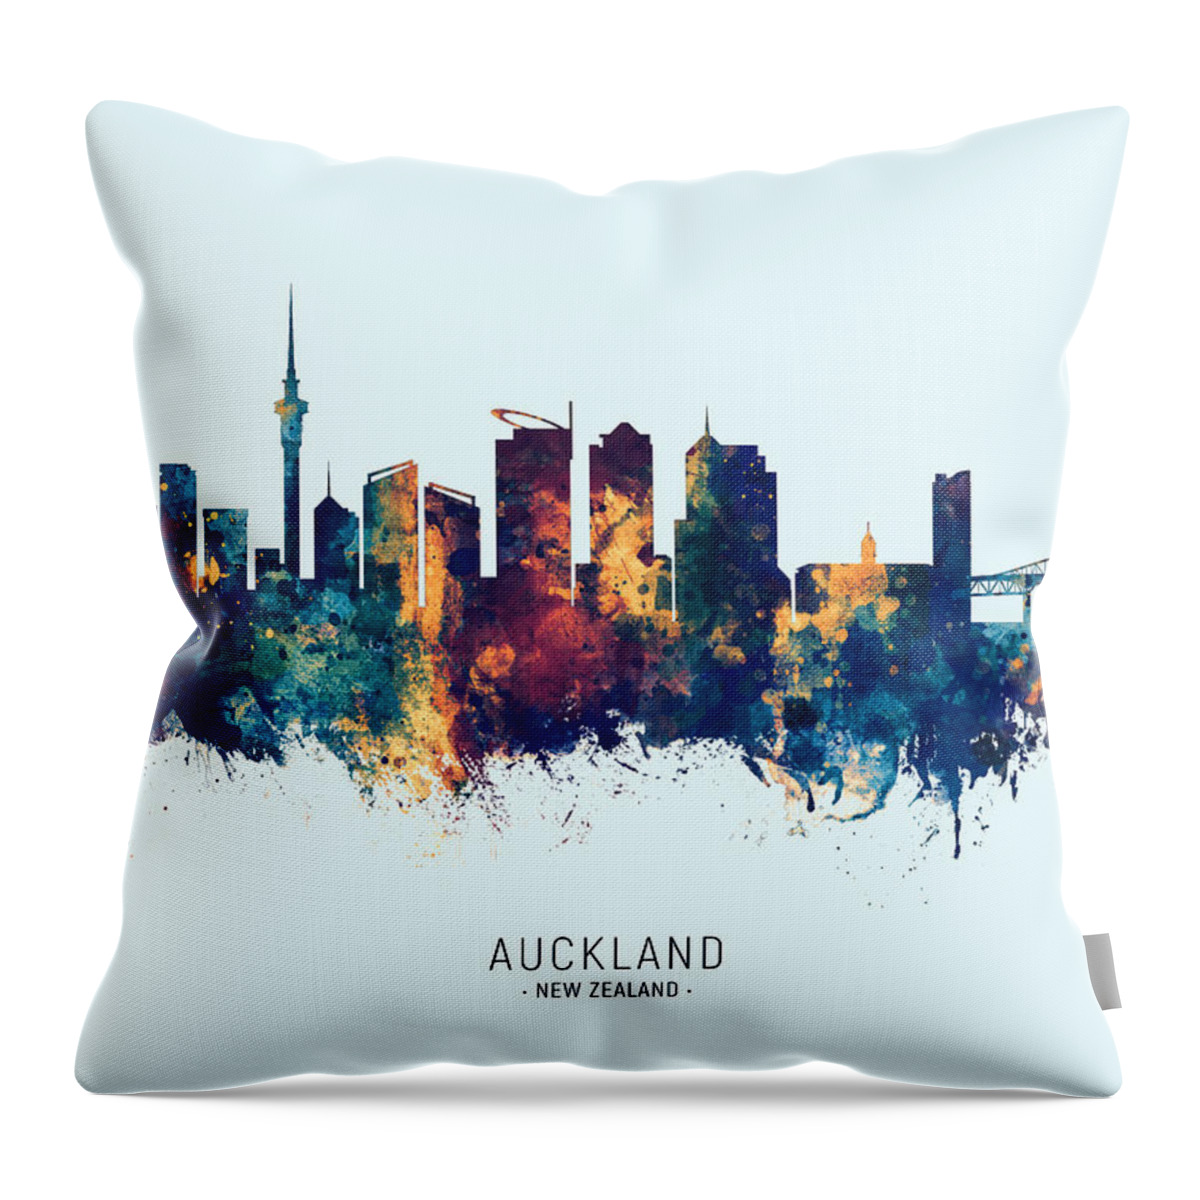 Auckland Throw Pillow featuring the digital art Auckland New Zealand Skyline #18 by Michael Tompsett